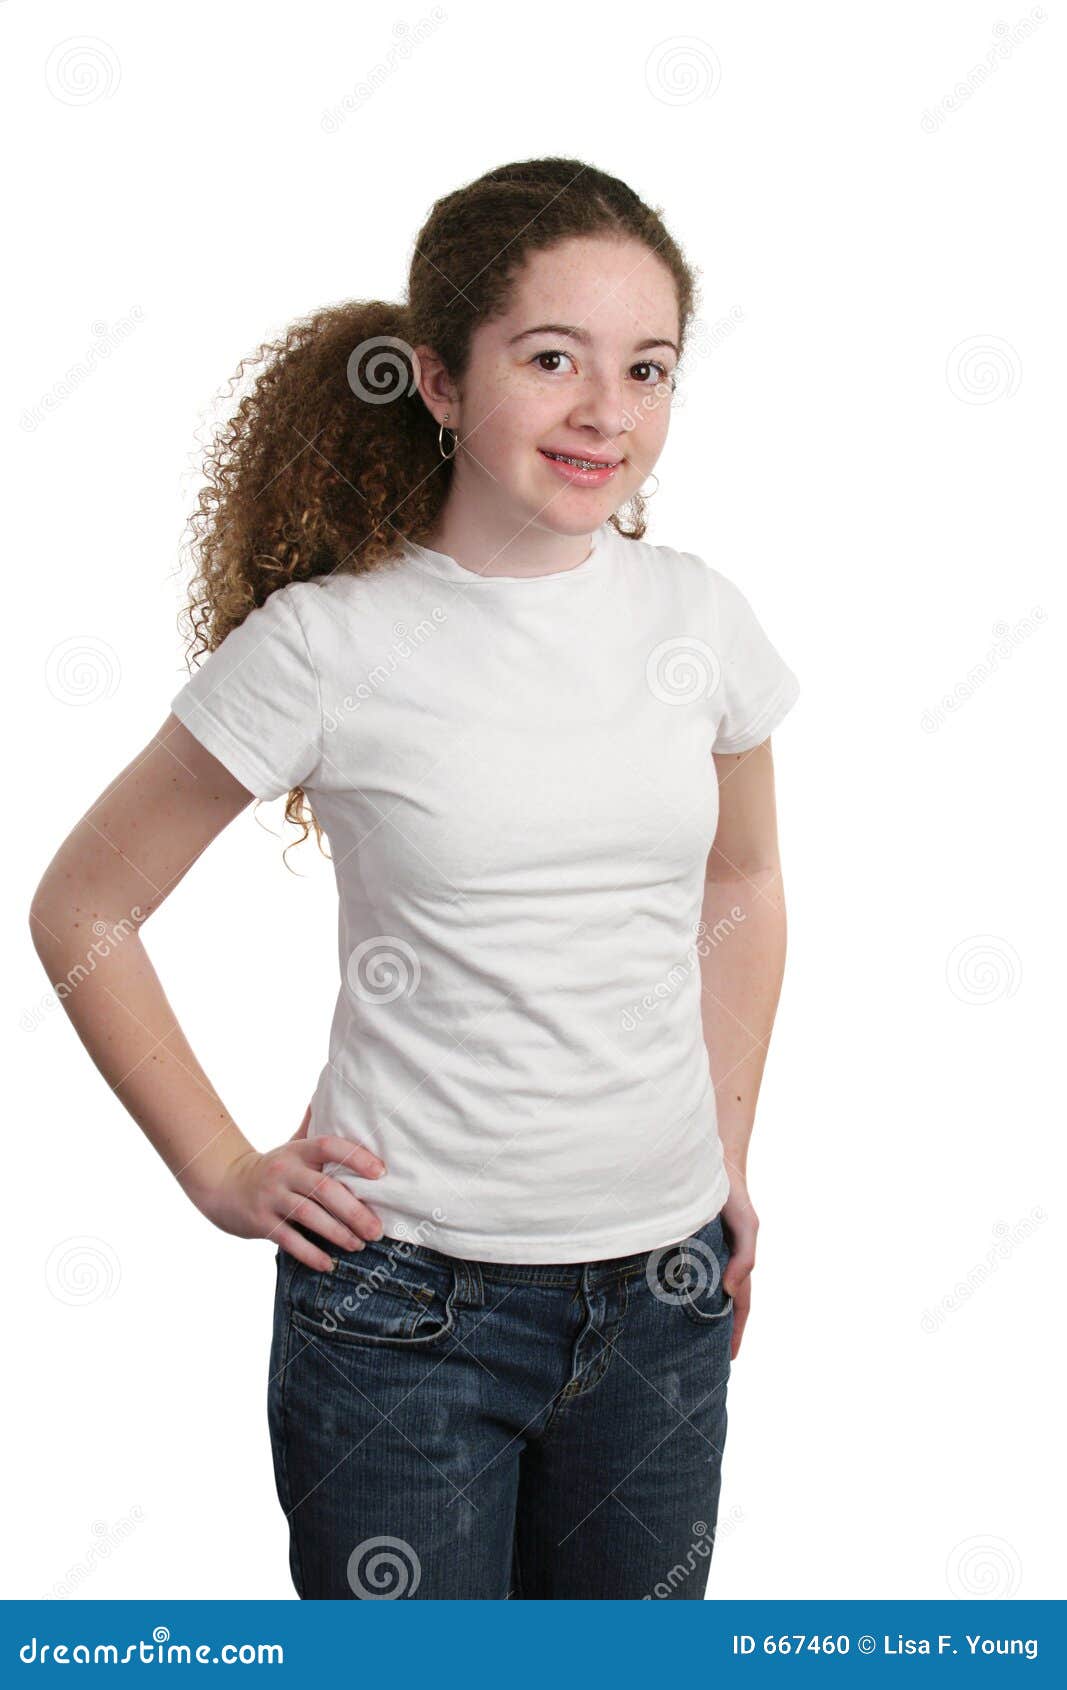 girls with white shirt